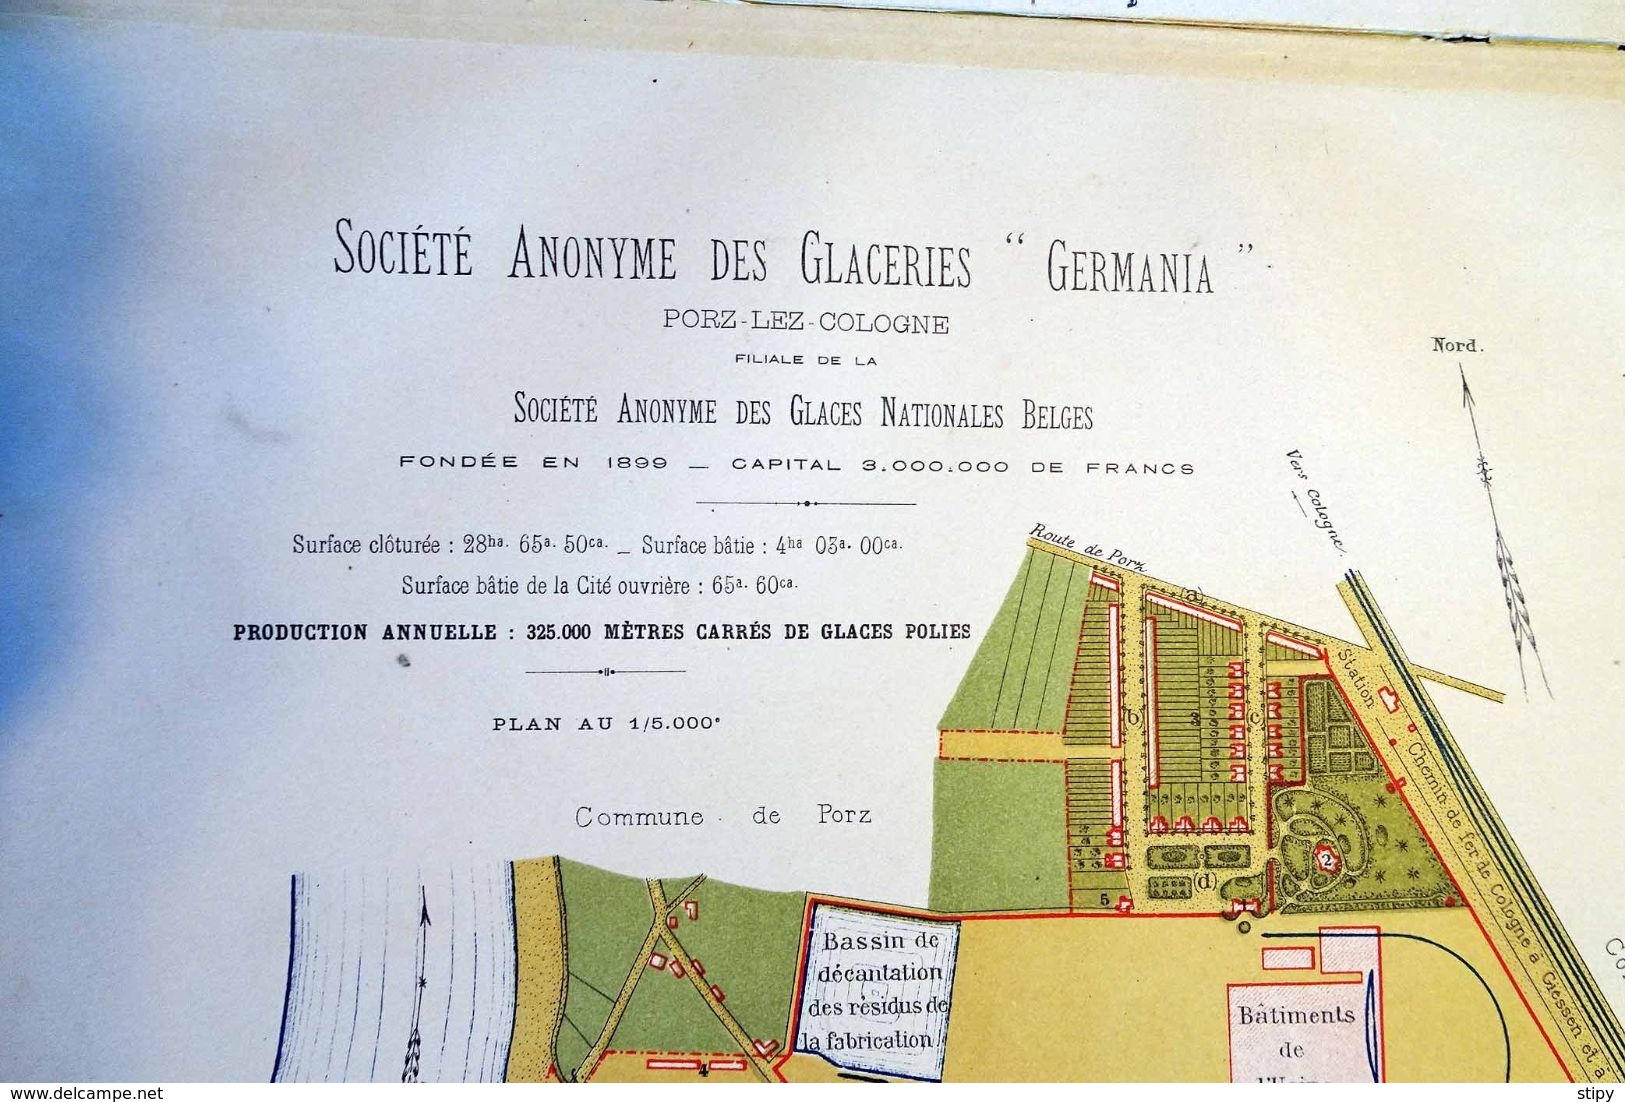 Auvelais – Porz-Cologne; Glaces nationales belges et glaceries Germania, 1905, 32 pages. Ouvrage très rare. ATTENTION,